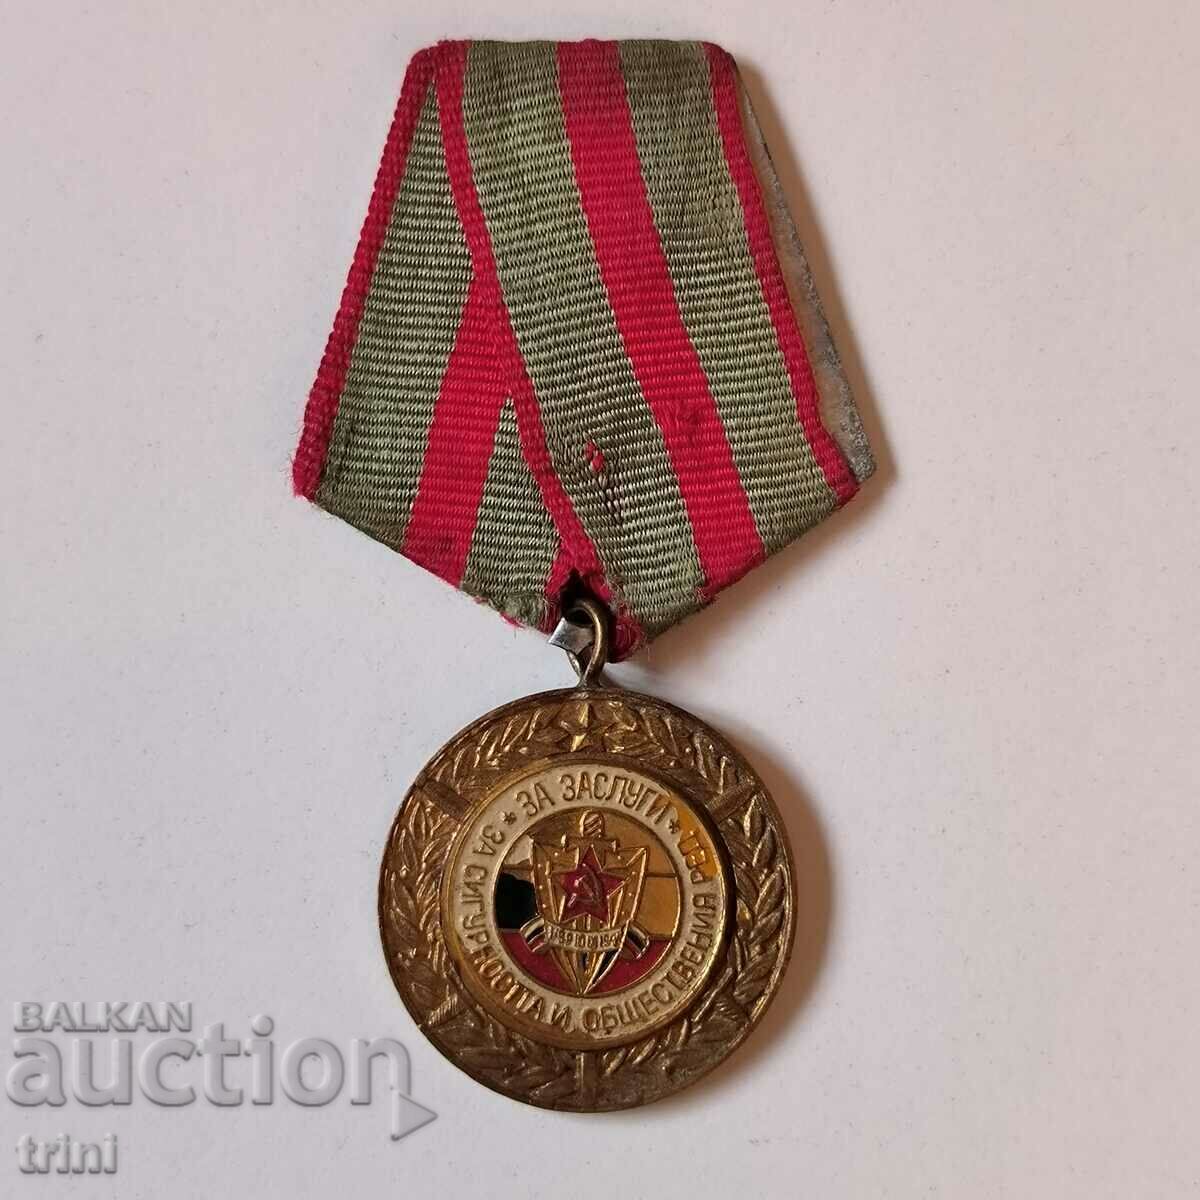 Medalia pentru Meritul pentru Securitate și Ordine Publică 1974